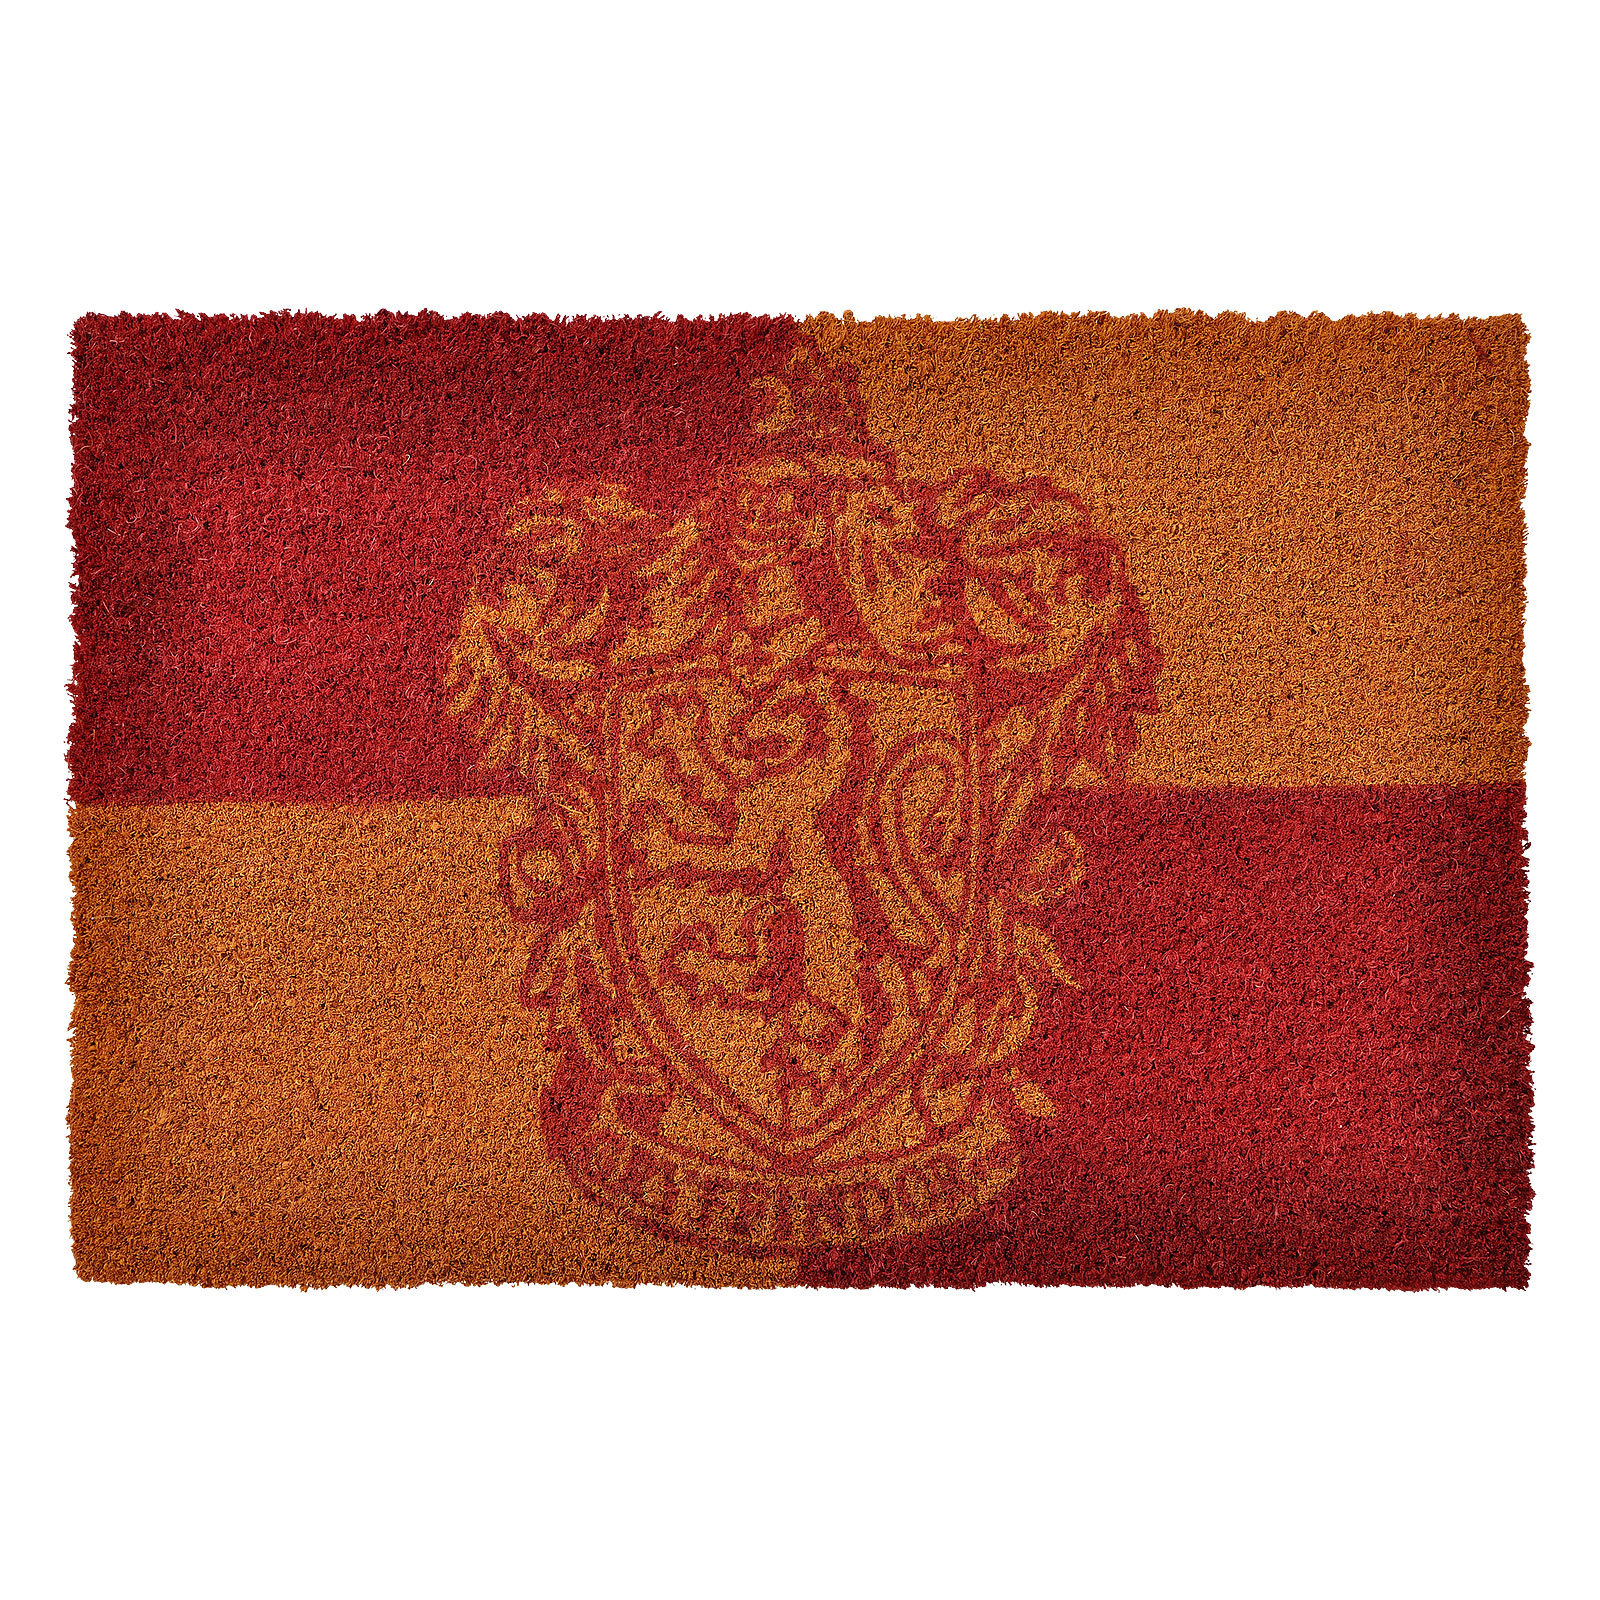 Harry Potter - Gryffindor Crest Doormat